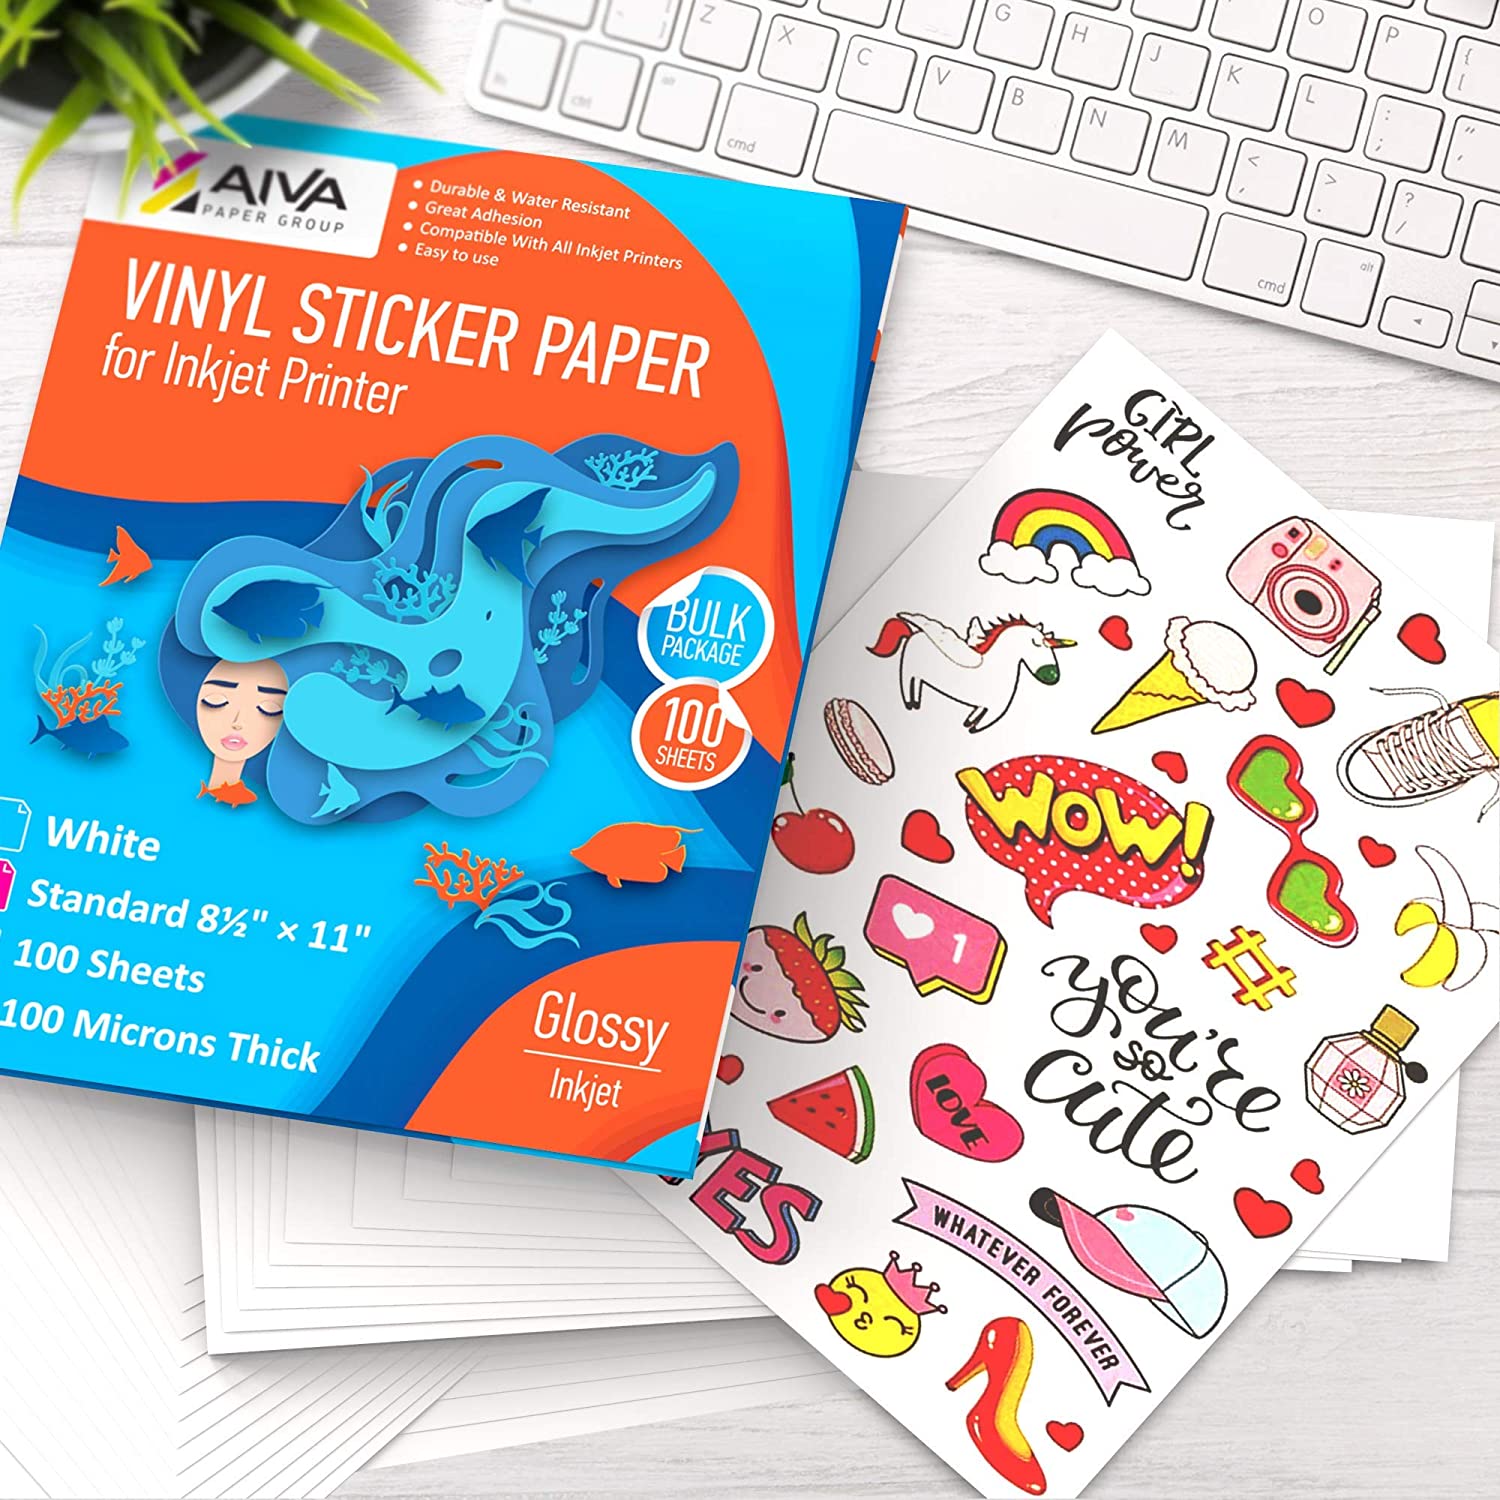 printable-vinyl-sticker-paper-inkjet-glossy-100-sheets-aiva-paper-group